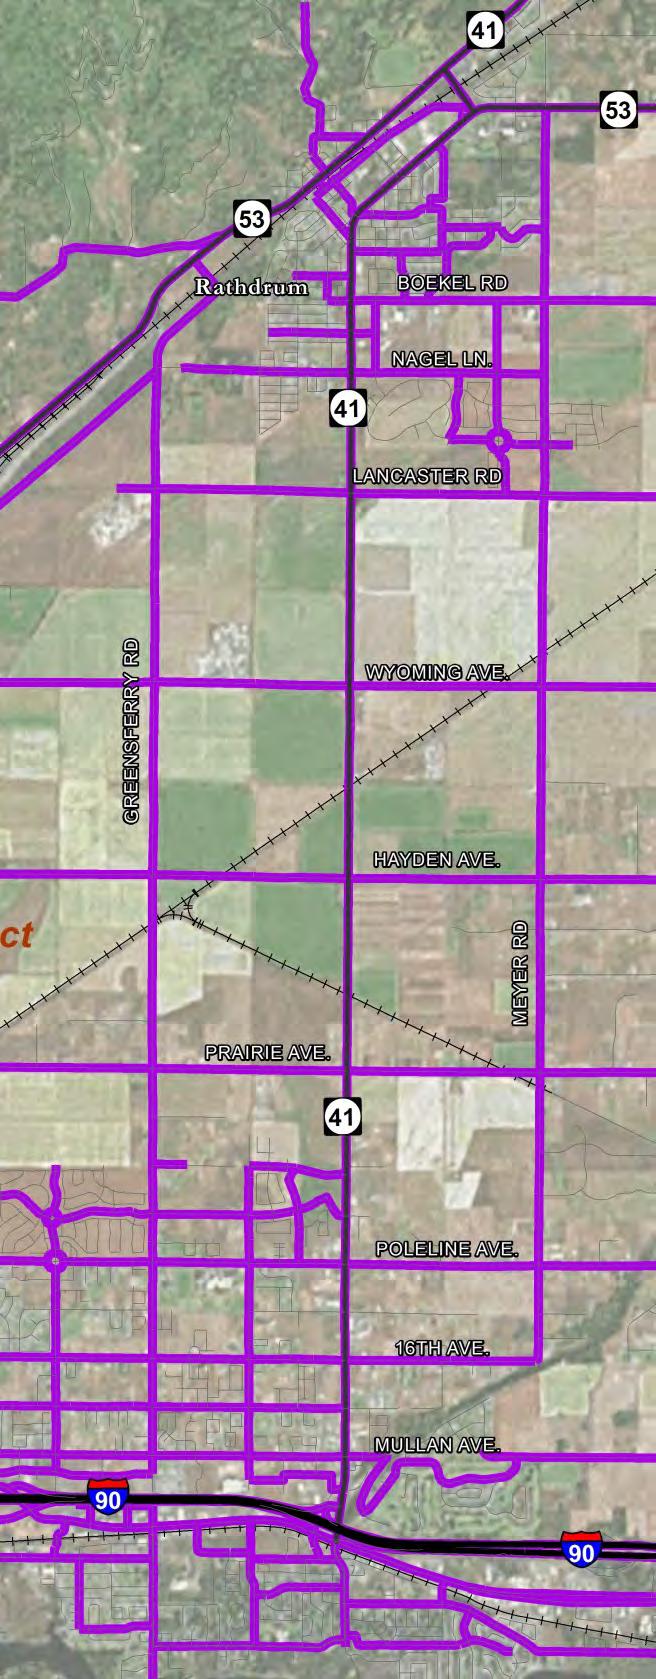 Figure 1 - SH 41 Corridor Area